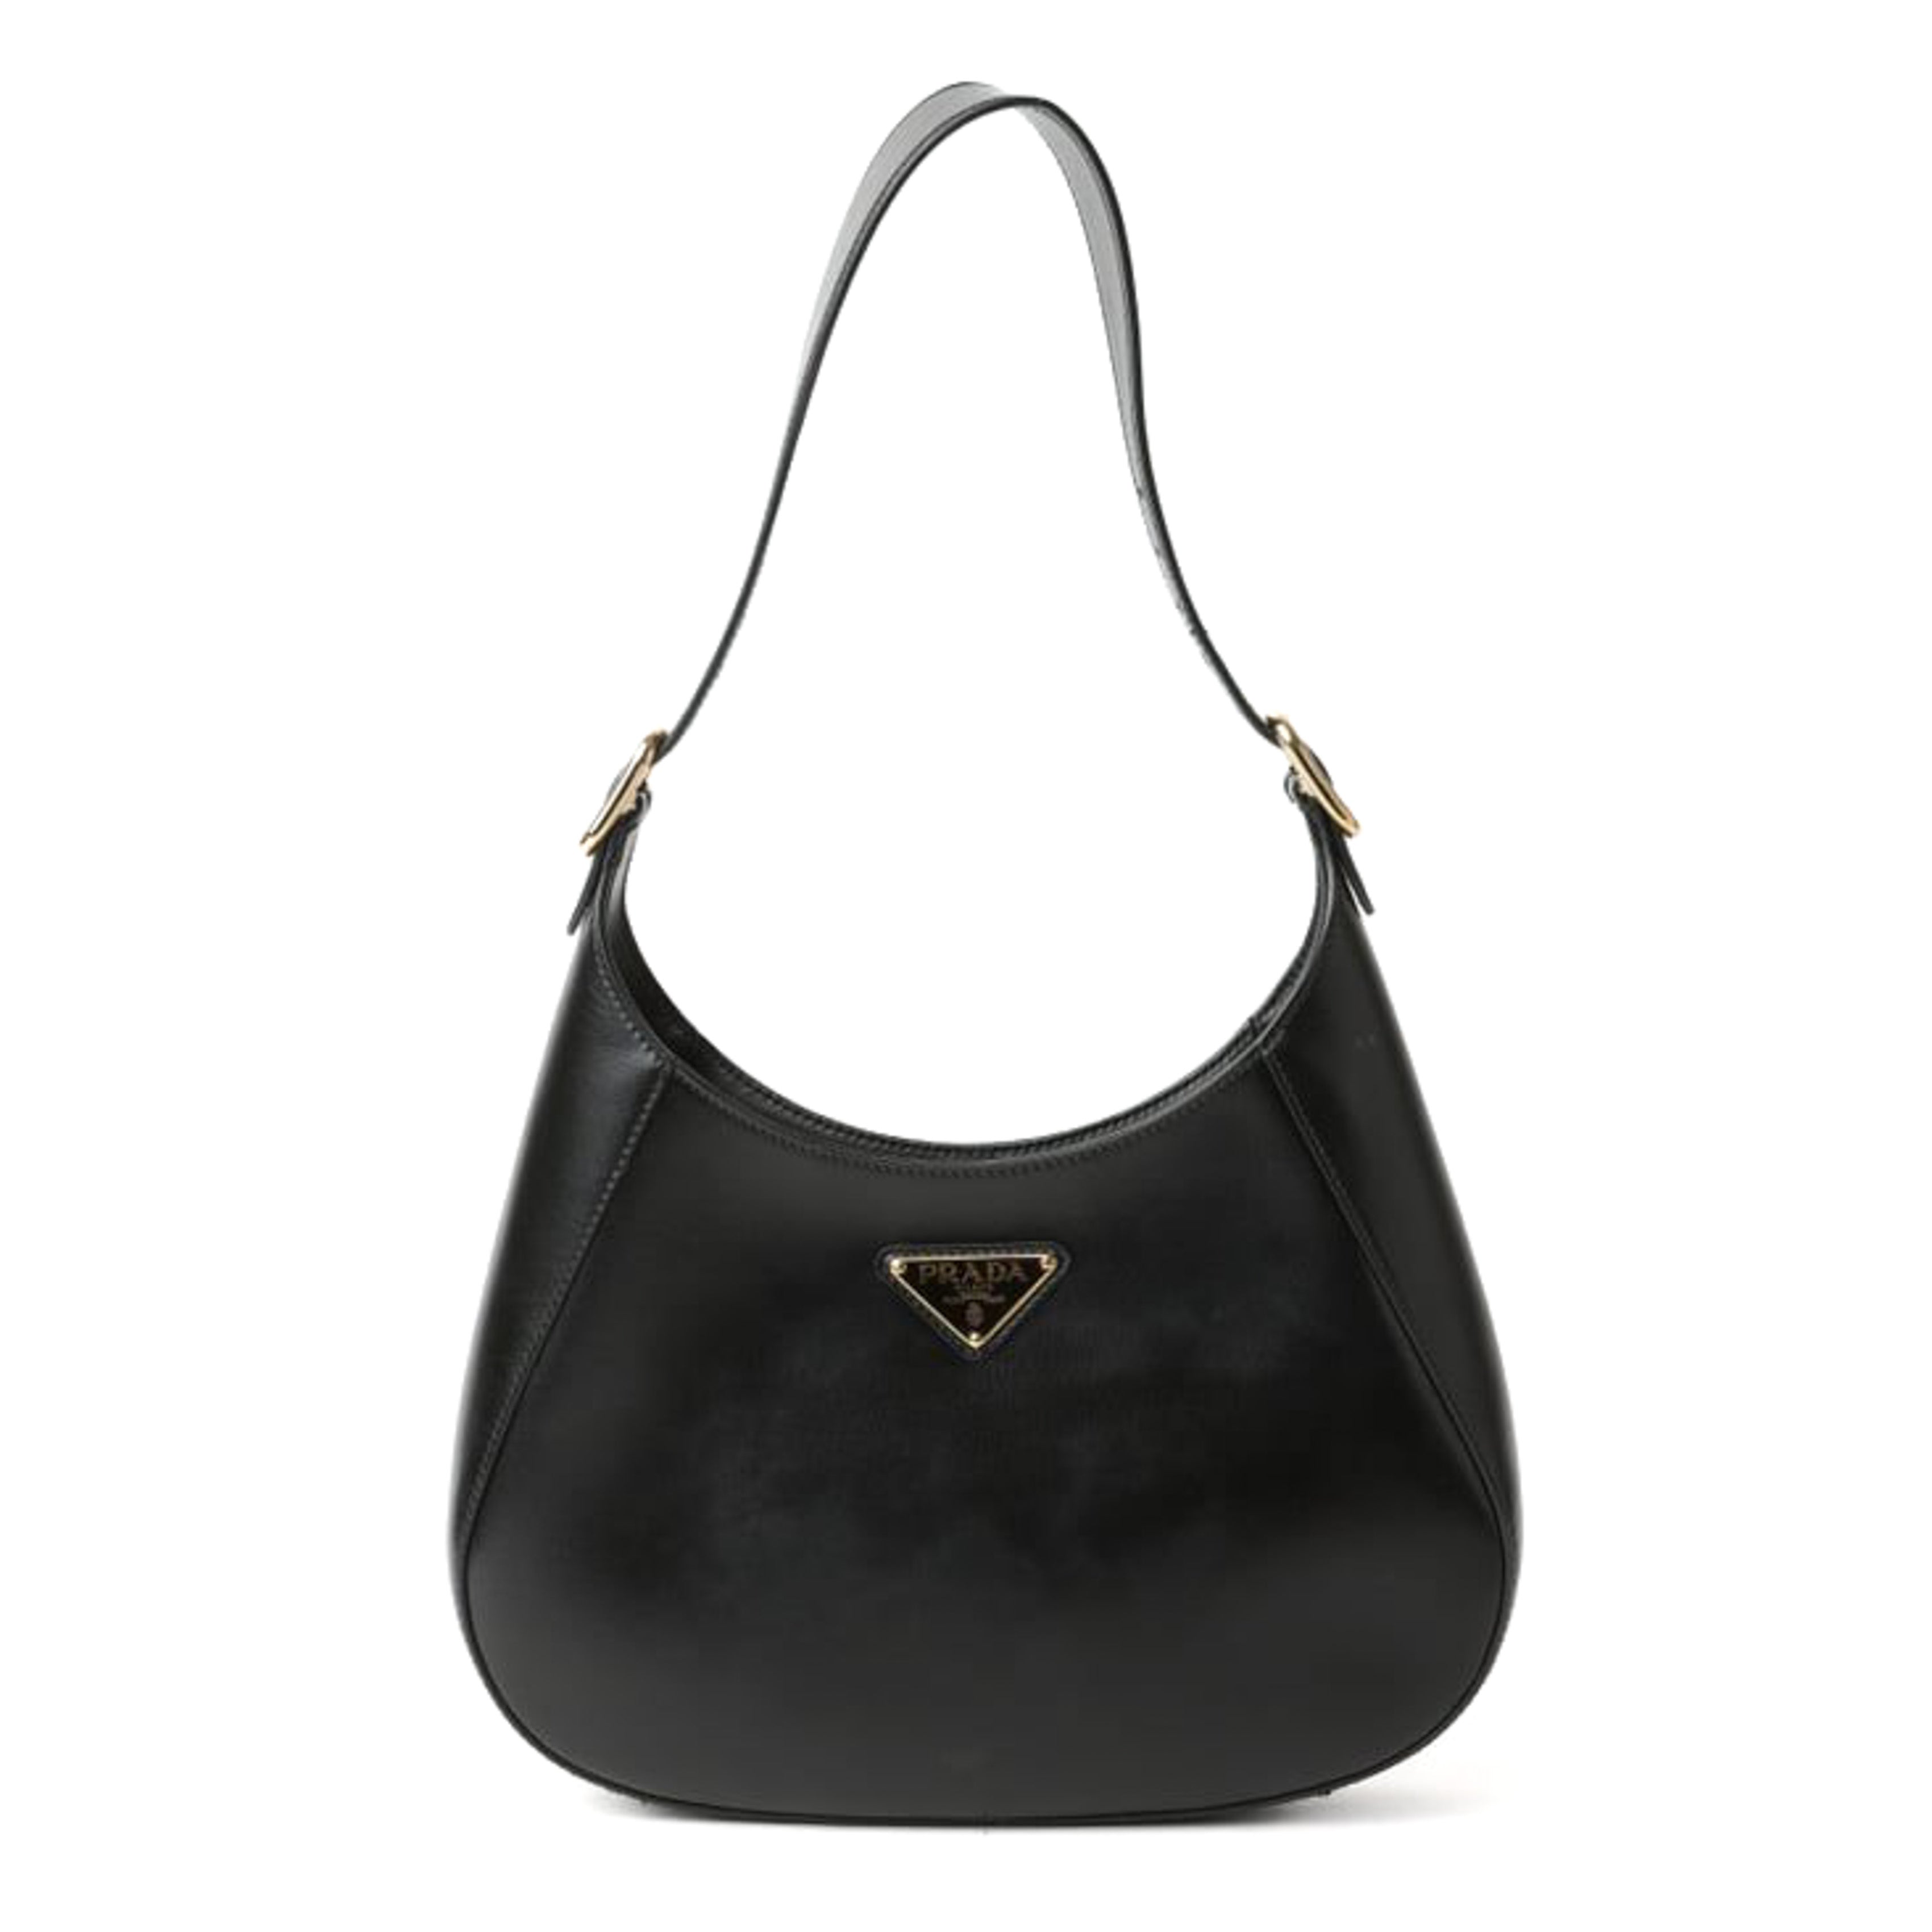 PRADA Prada Cleo Shoulder Bag in Black Brushed Leather - Vault 55